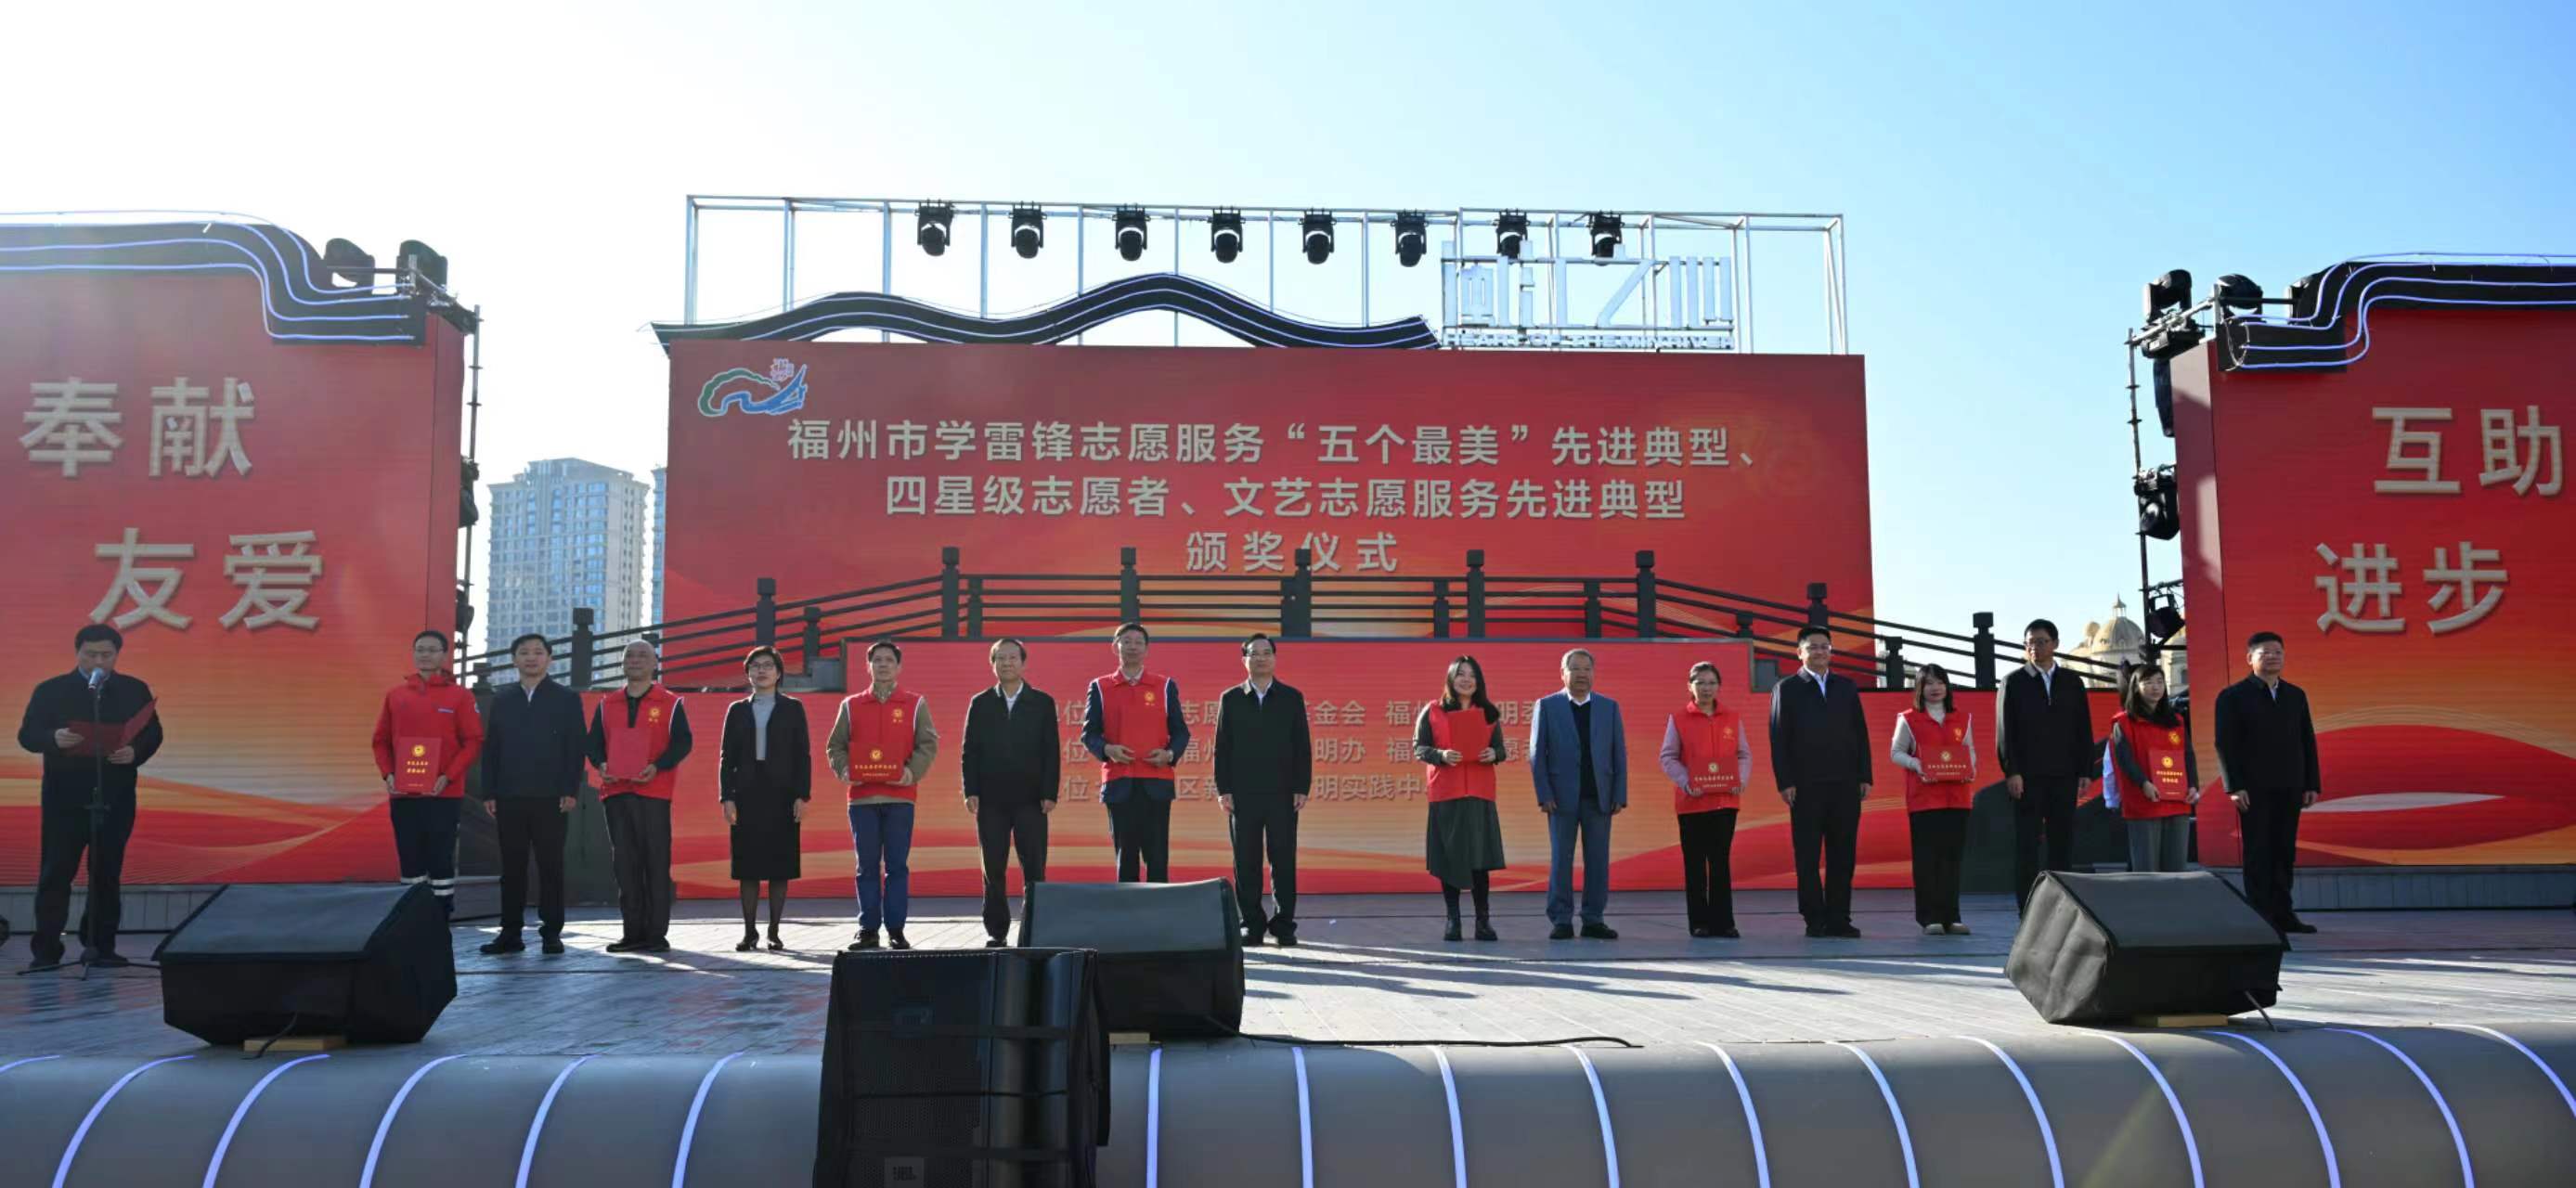 中国志愿服务基金会 “志愿福州”专项基金启动